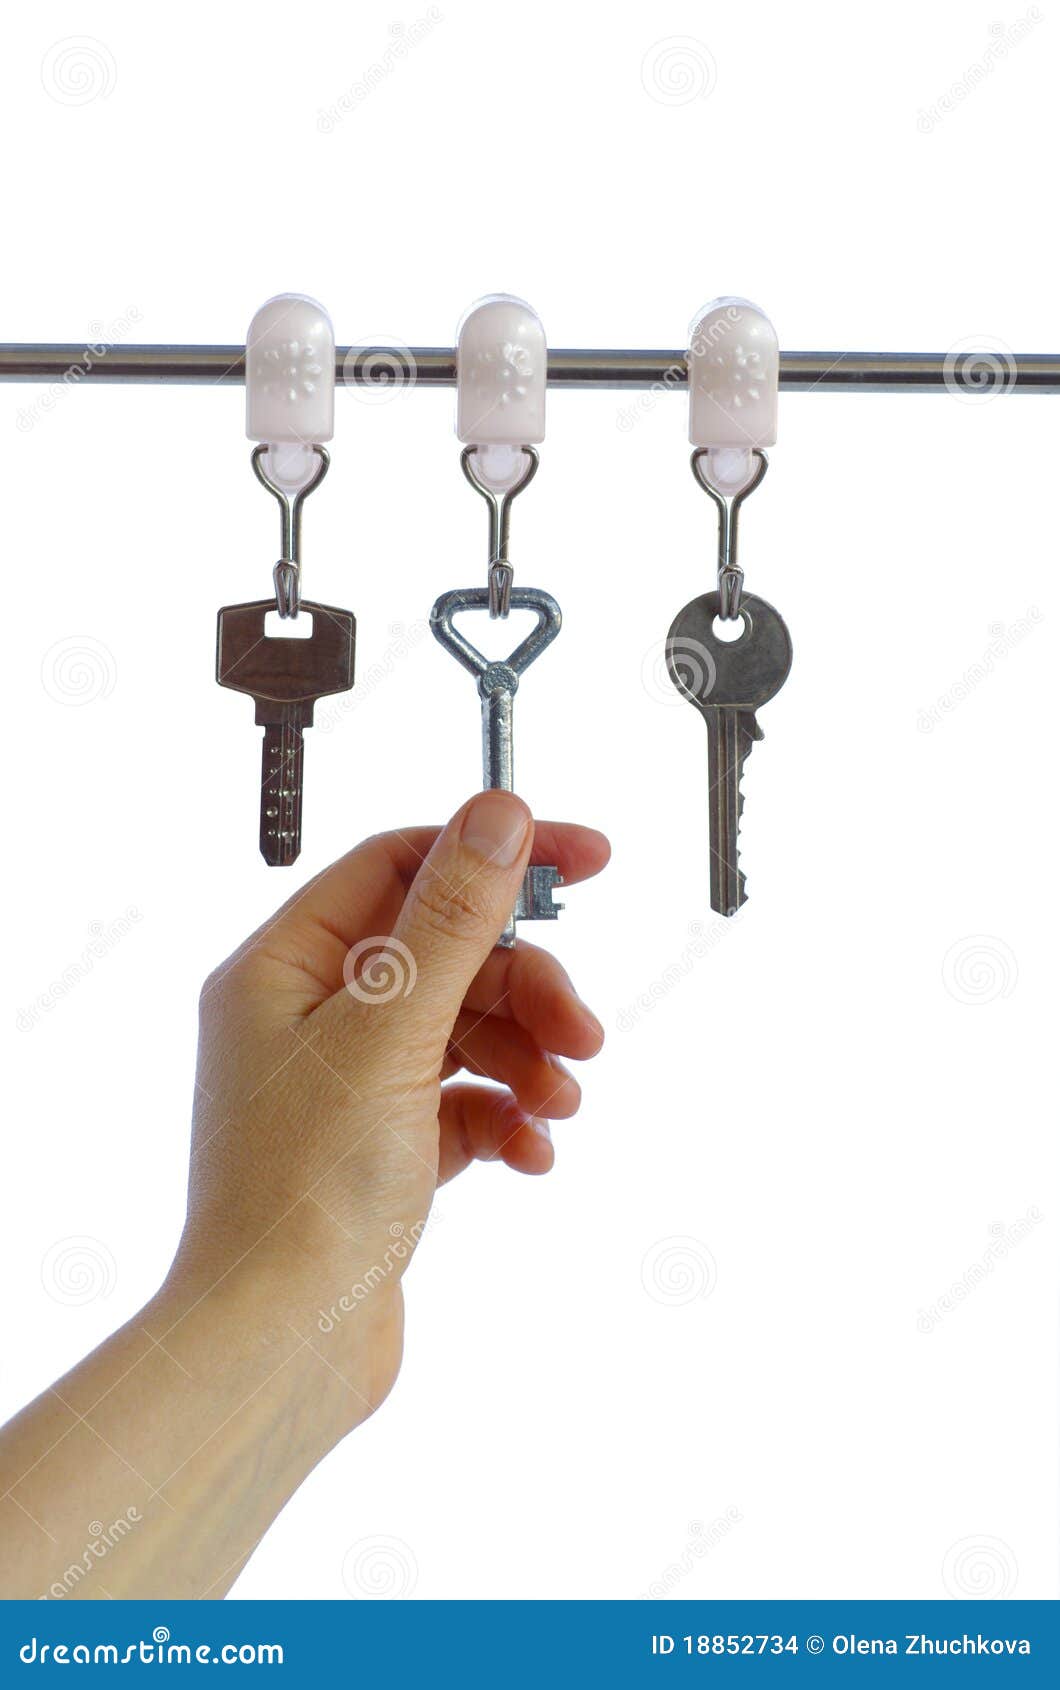 necessary key